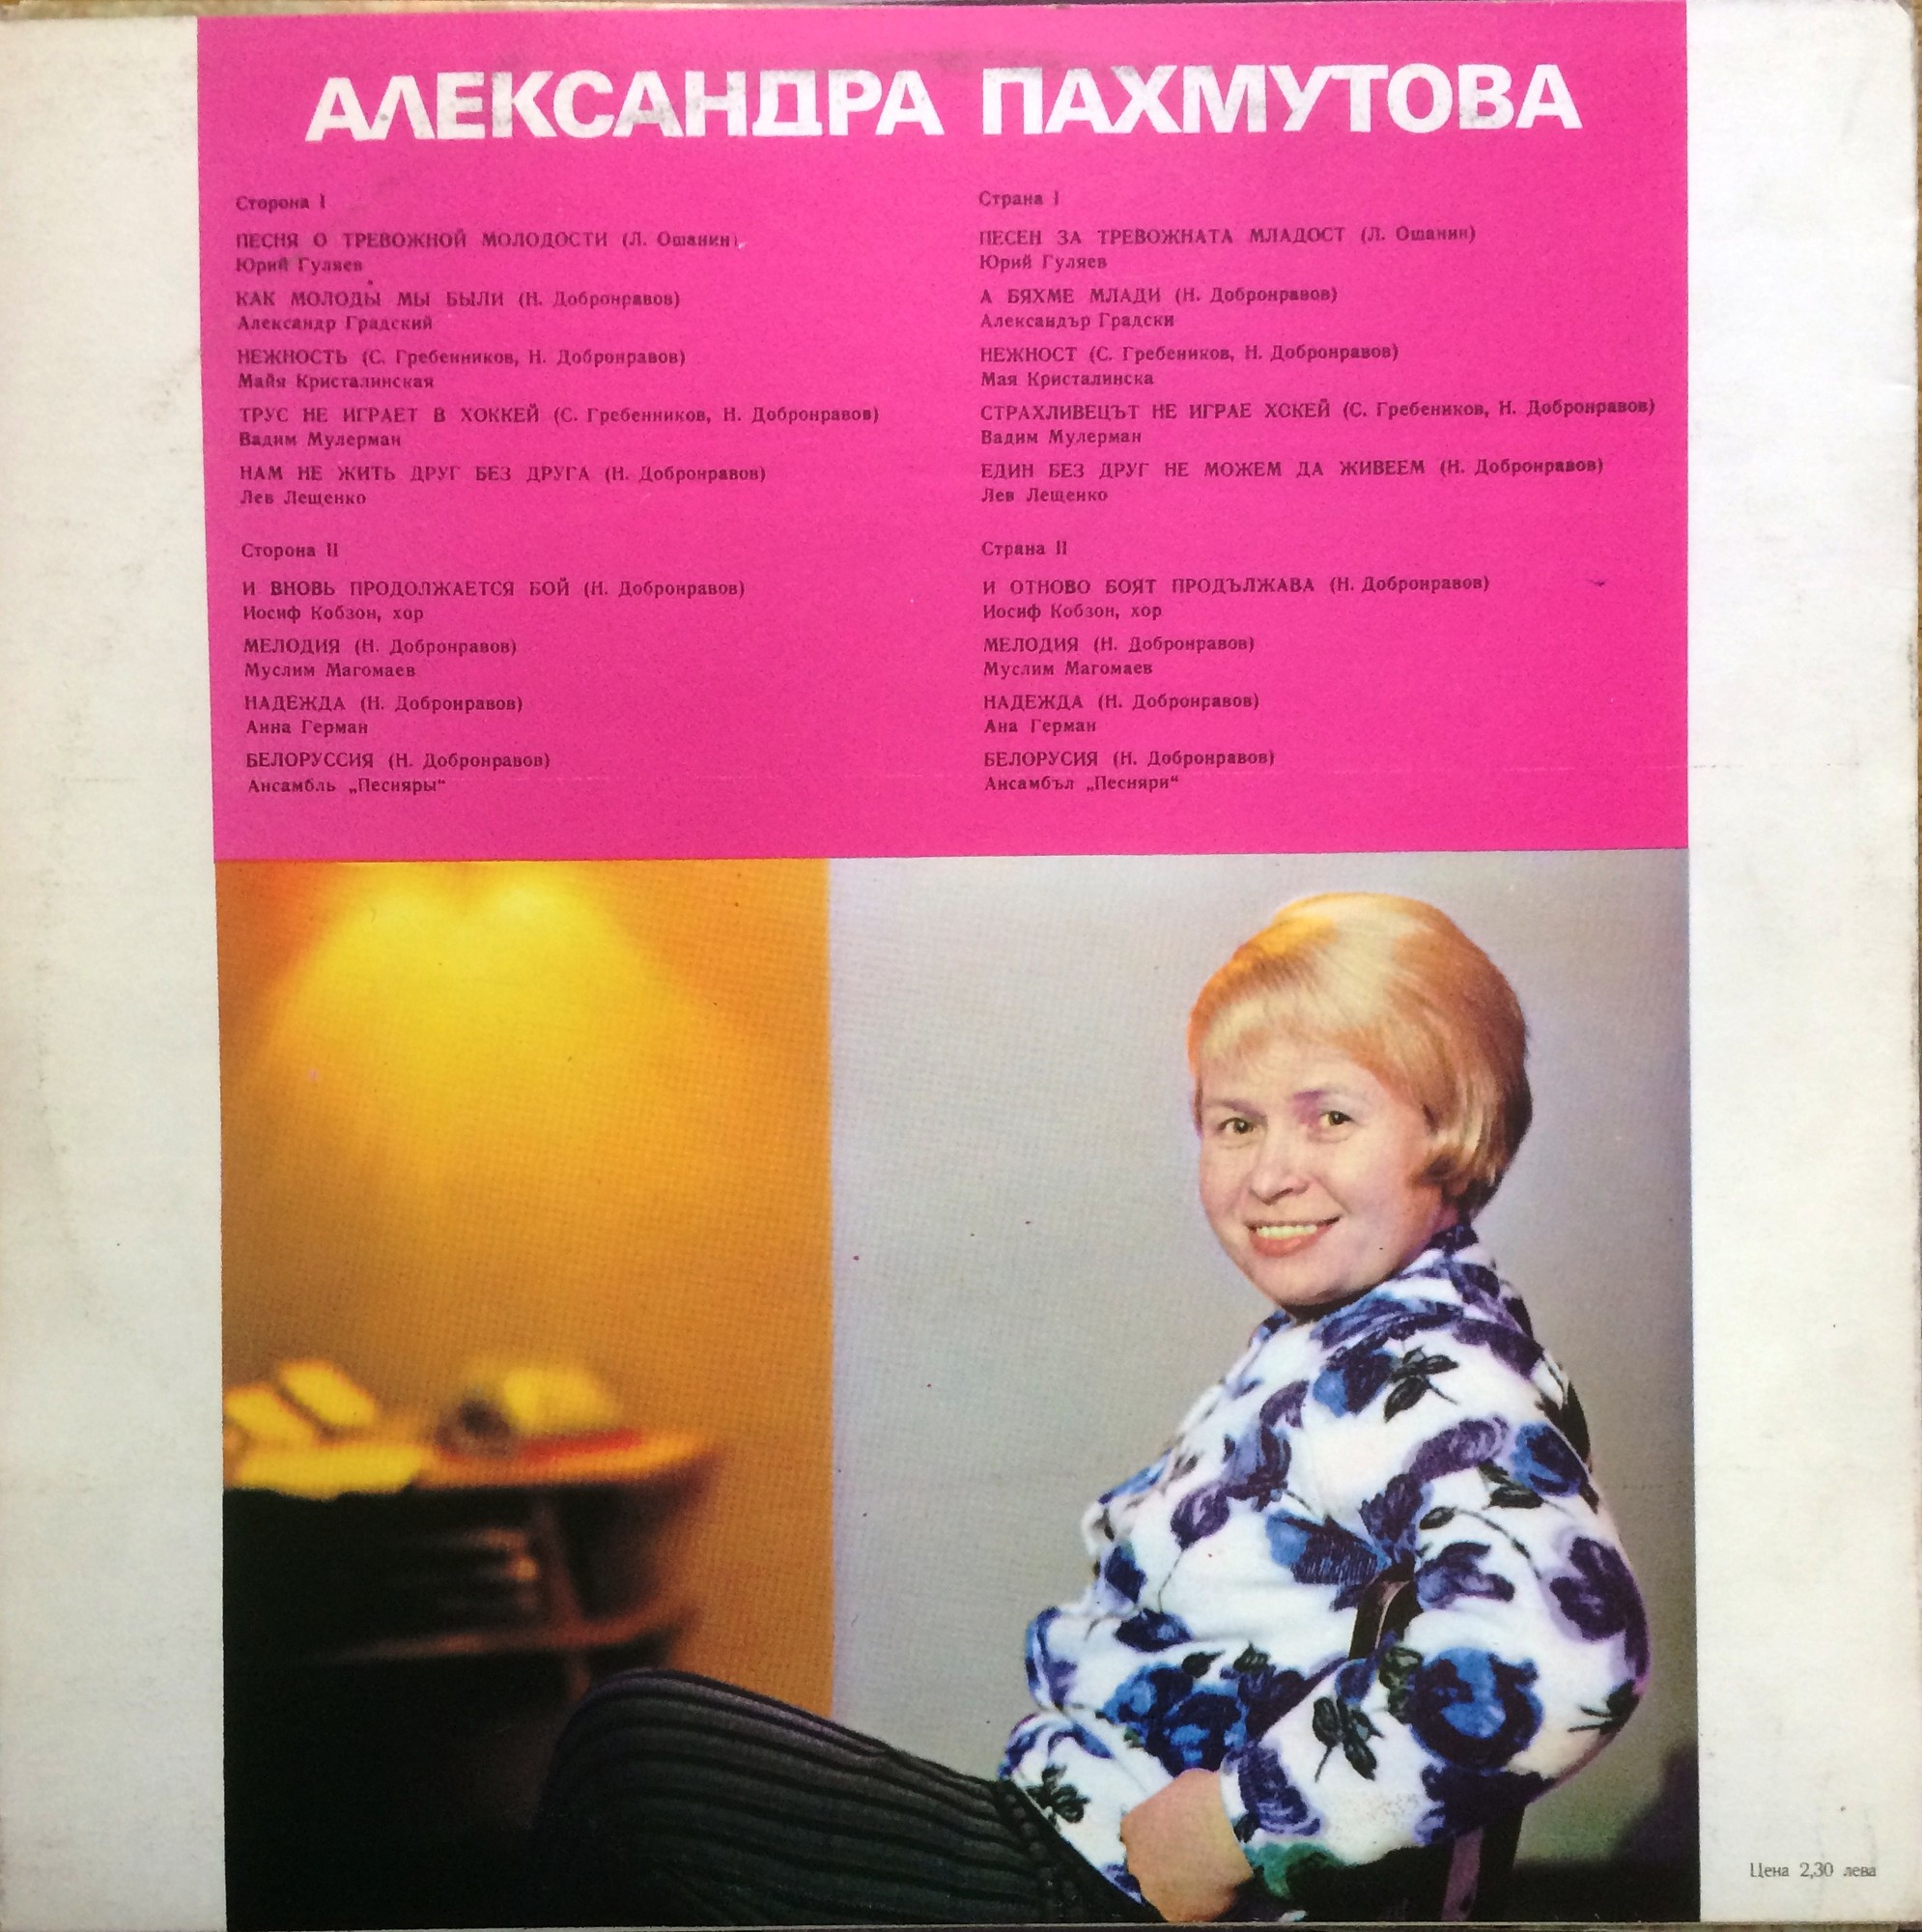 Песни Александры Пахмутовой (по заказу болгарской фирмы "Балкантон")